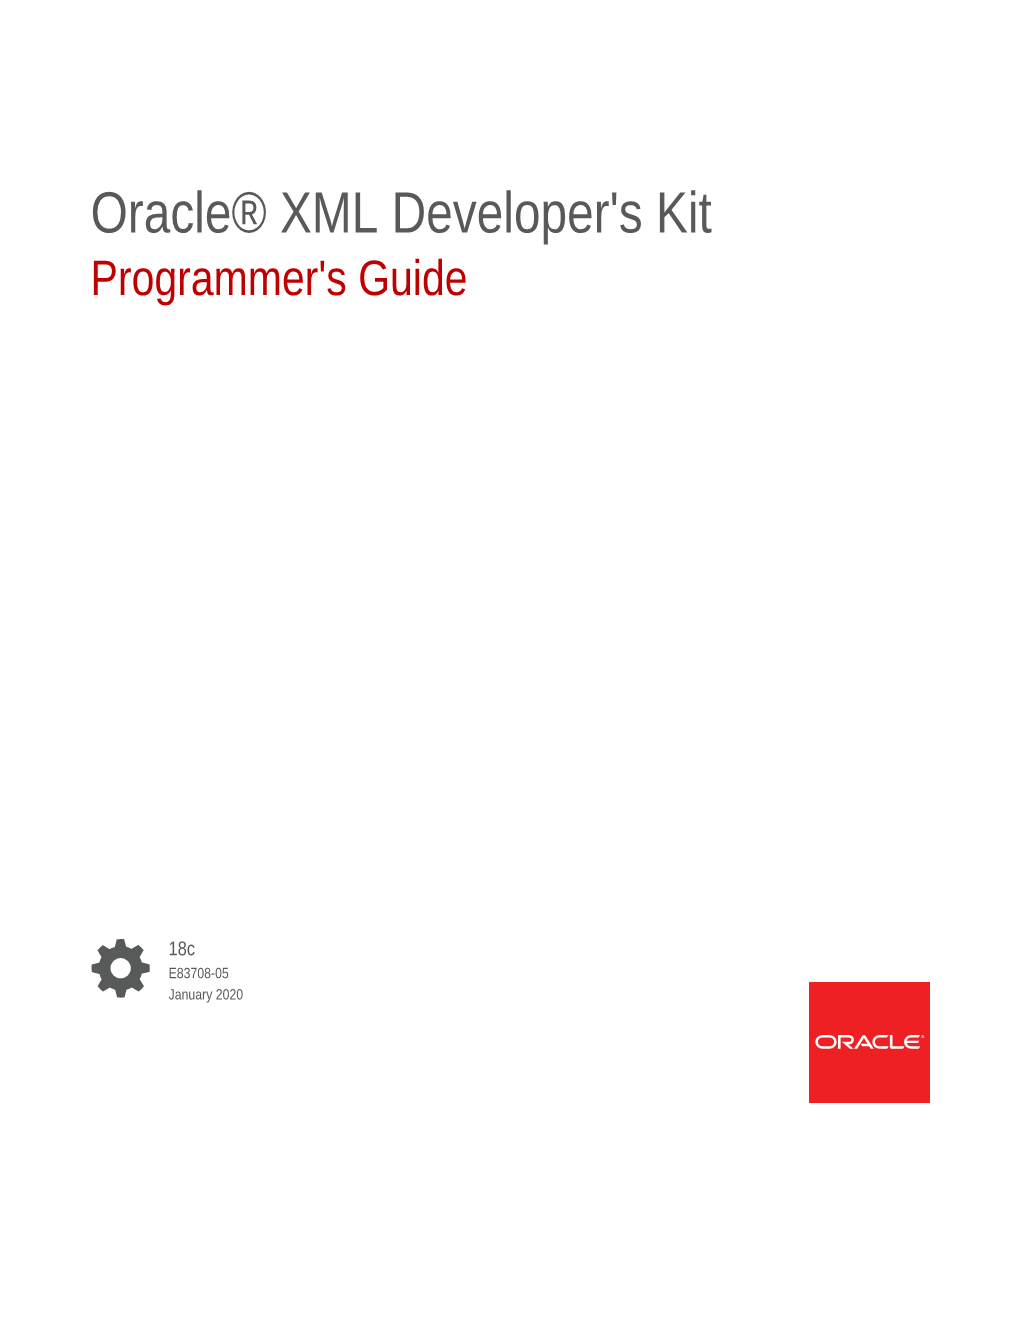 Oracle® XML Developer's Kit Programmer's Guide